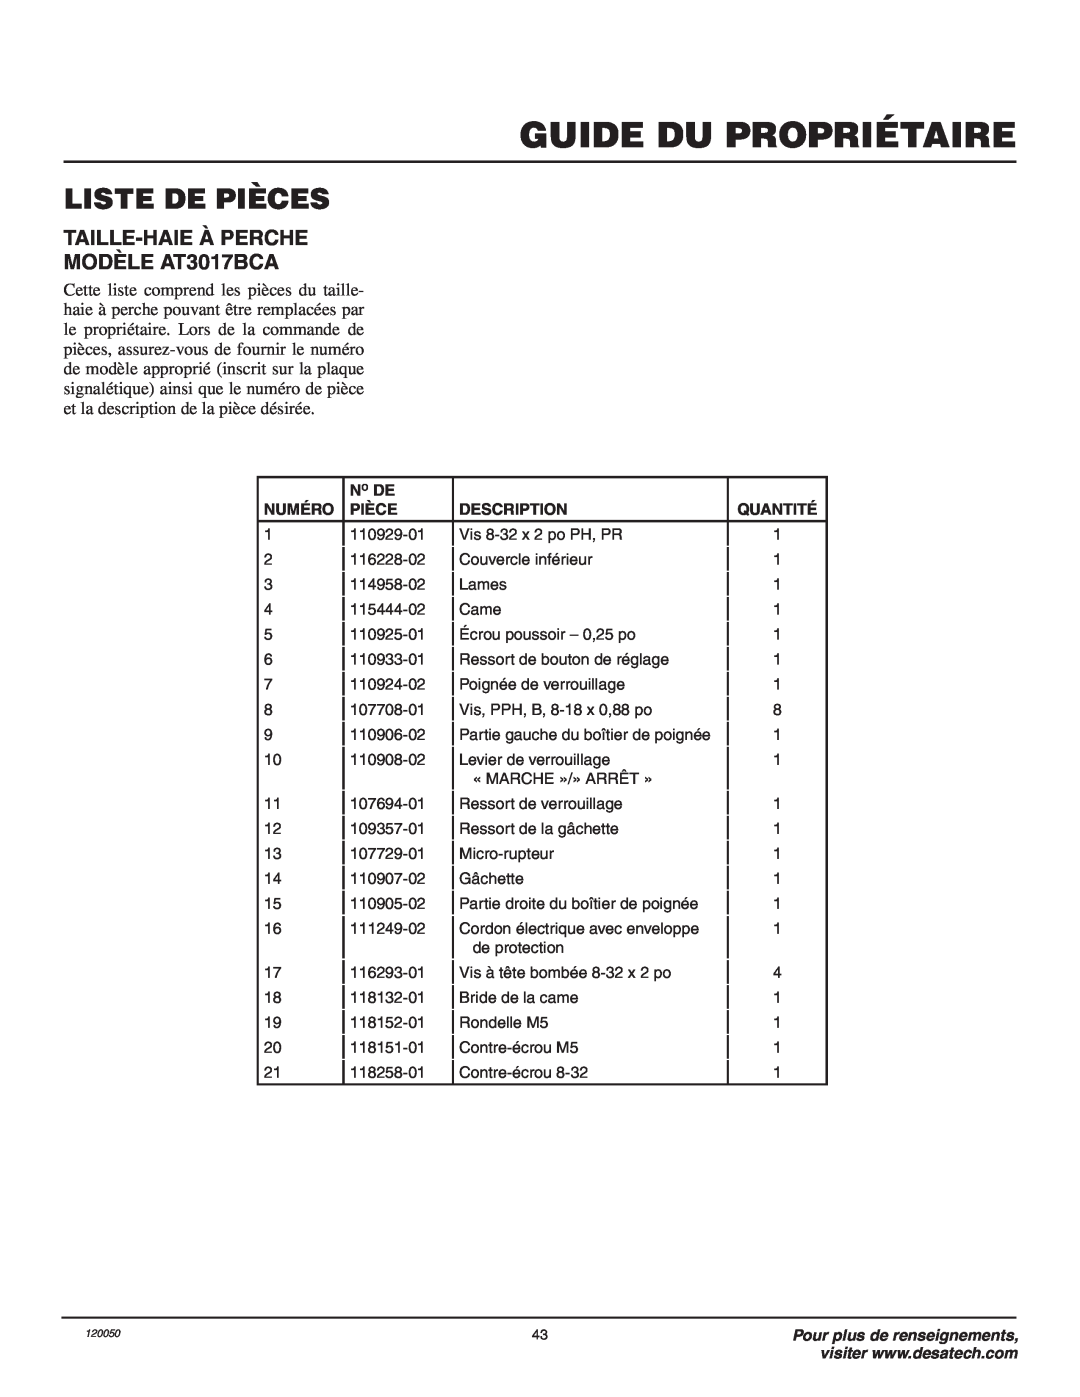 Remington AT3017BCA owner manual Liste De Pièces, Guide Du Propriétaire, No De, Numéro, Description, Quantité 